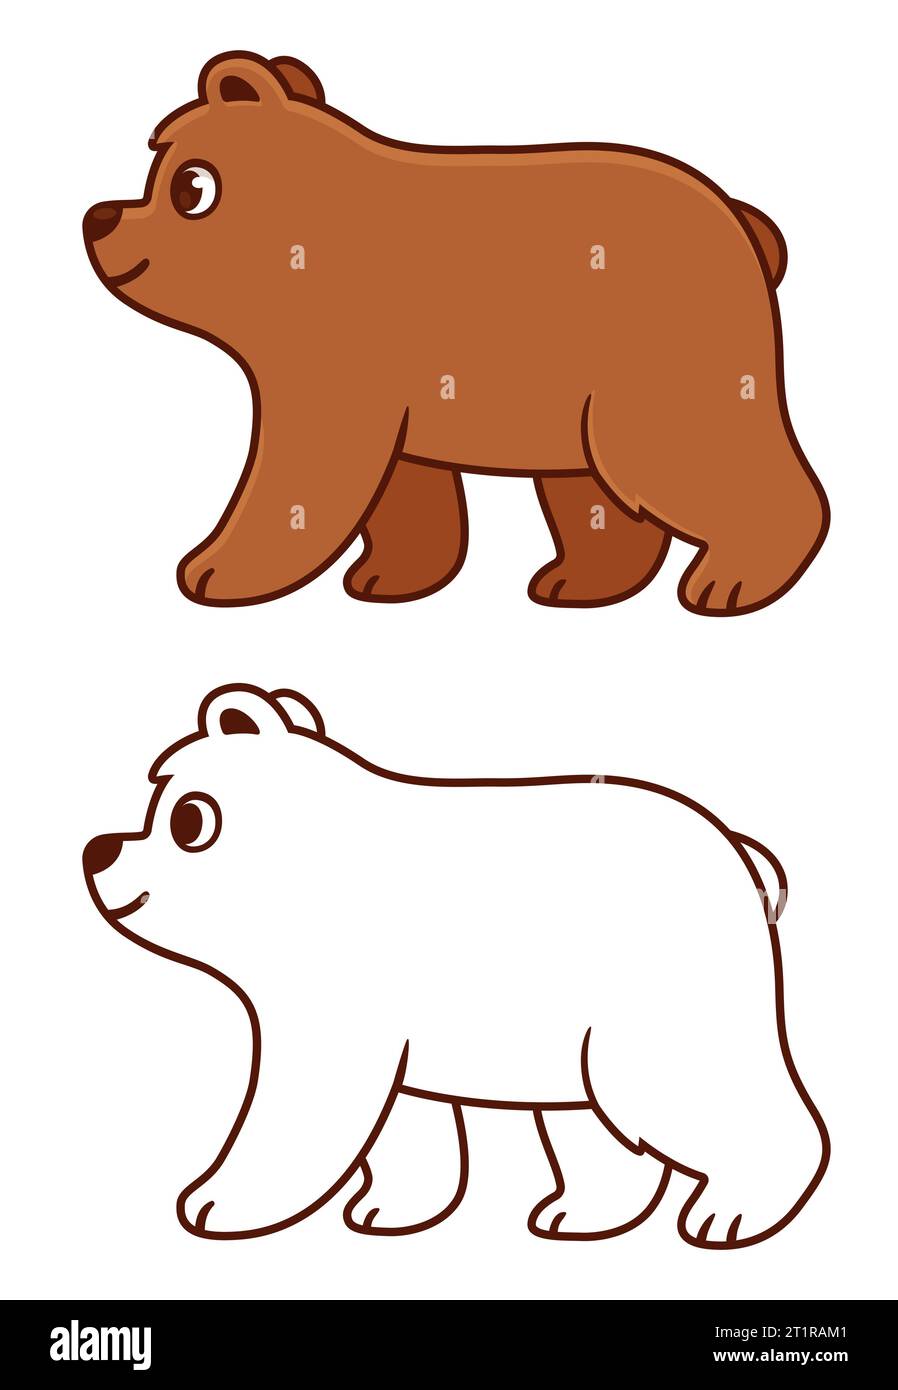 Niedliche Zeichentrick-Babybärenzeichnung. Braunbär, der in Profilansicht läuft. Farbige Zeichnung und Schwarzweiß-Strichgrafik zum Ausmalen. Vektorclip-Illustrat Stock Vektor